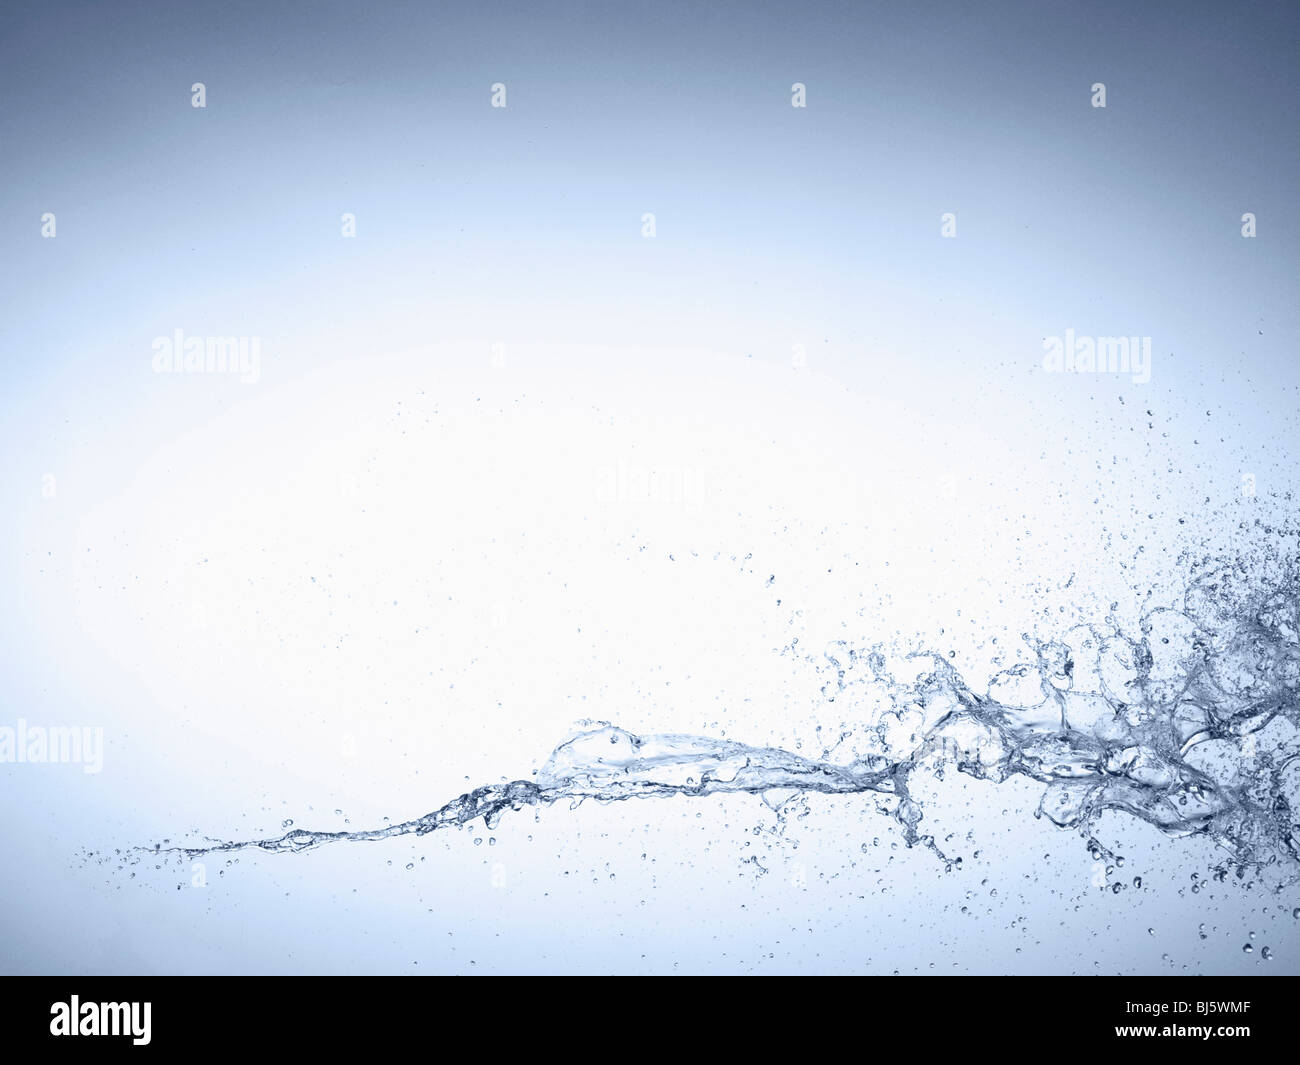 Splash of Water Stock Photo